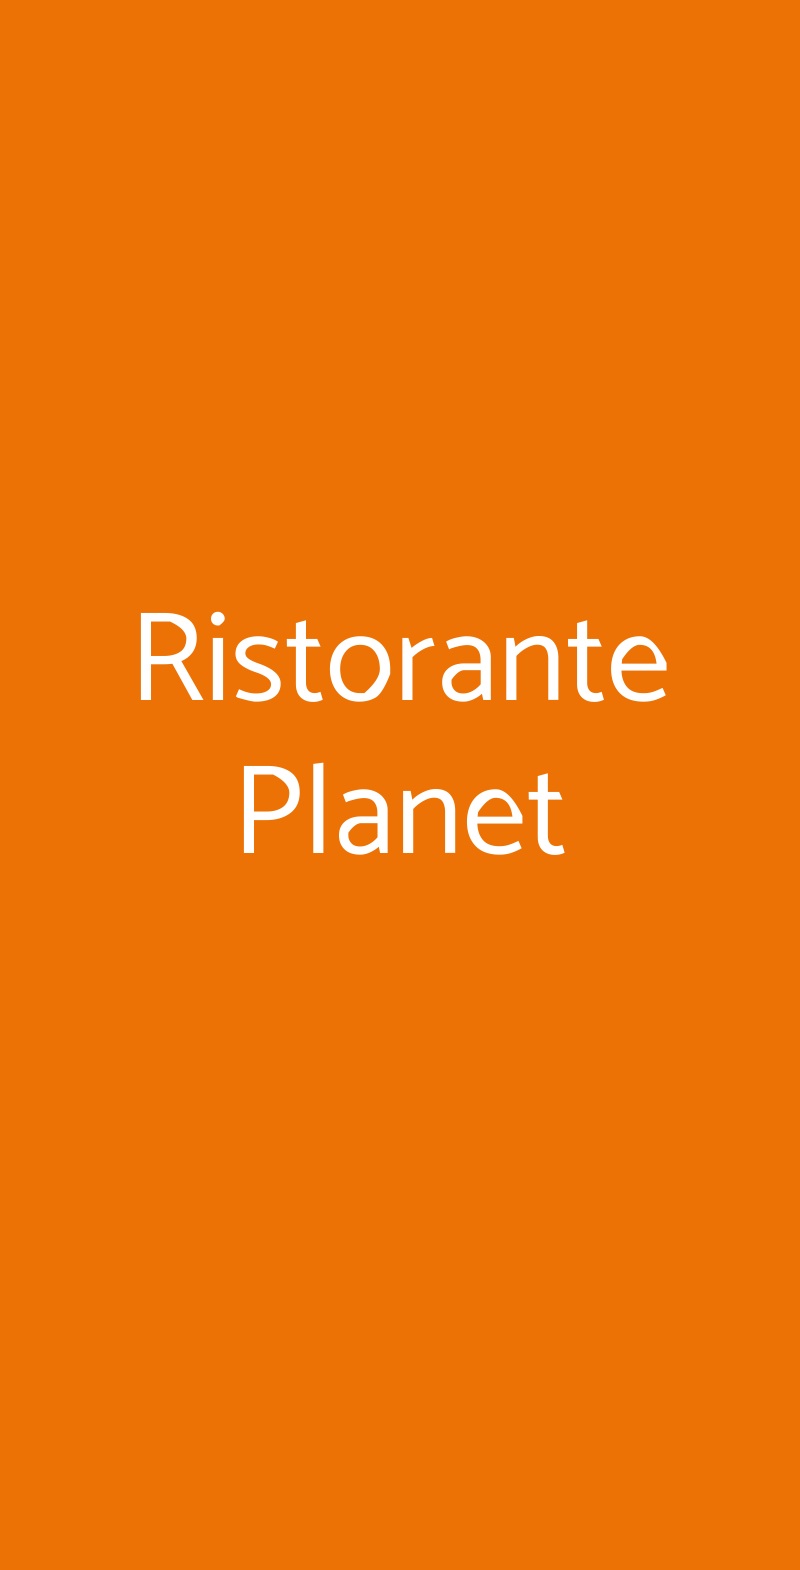 Ristorante Planet Milano menù 1 pagina